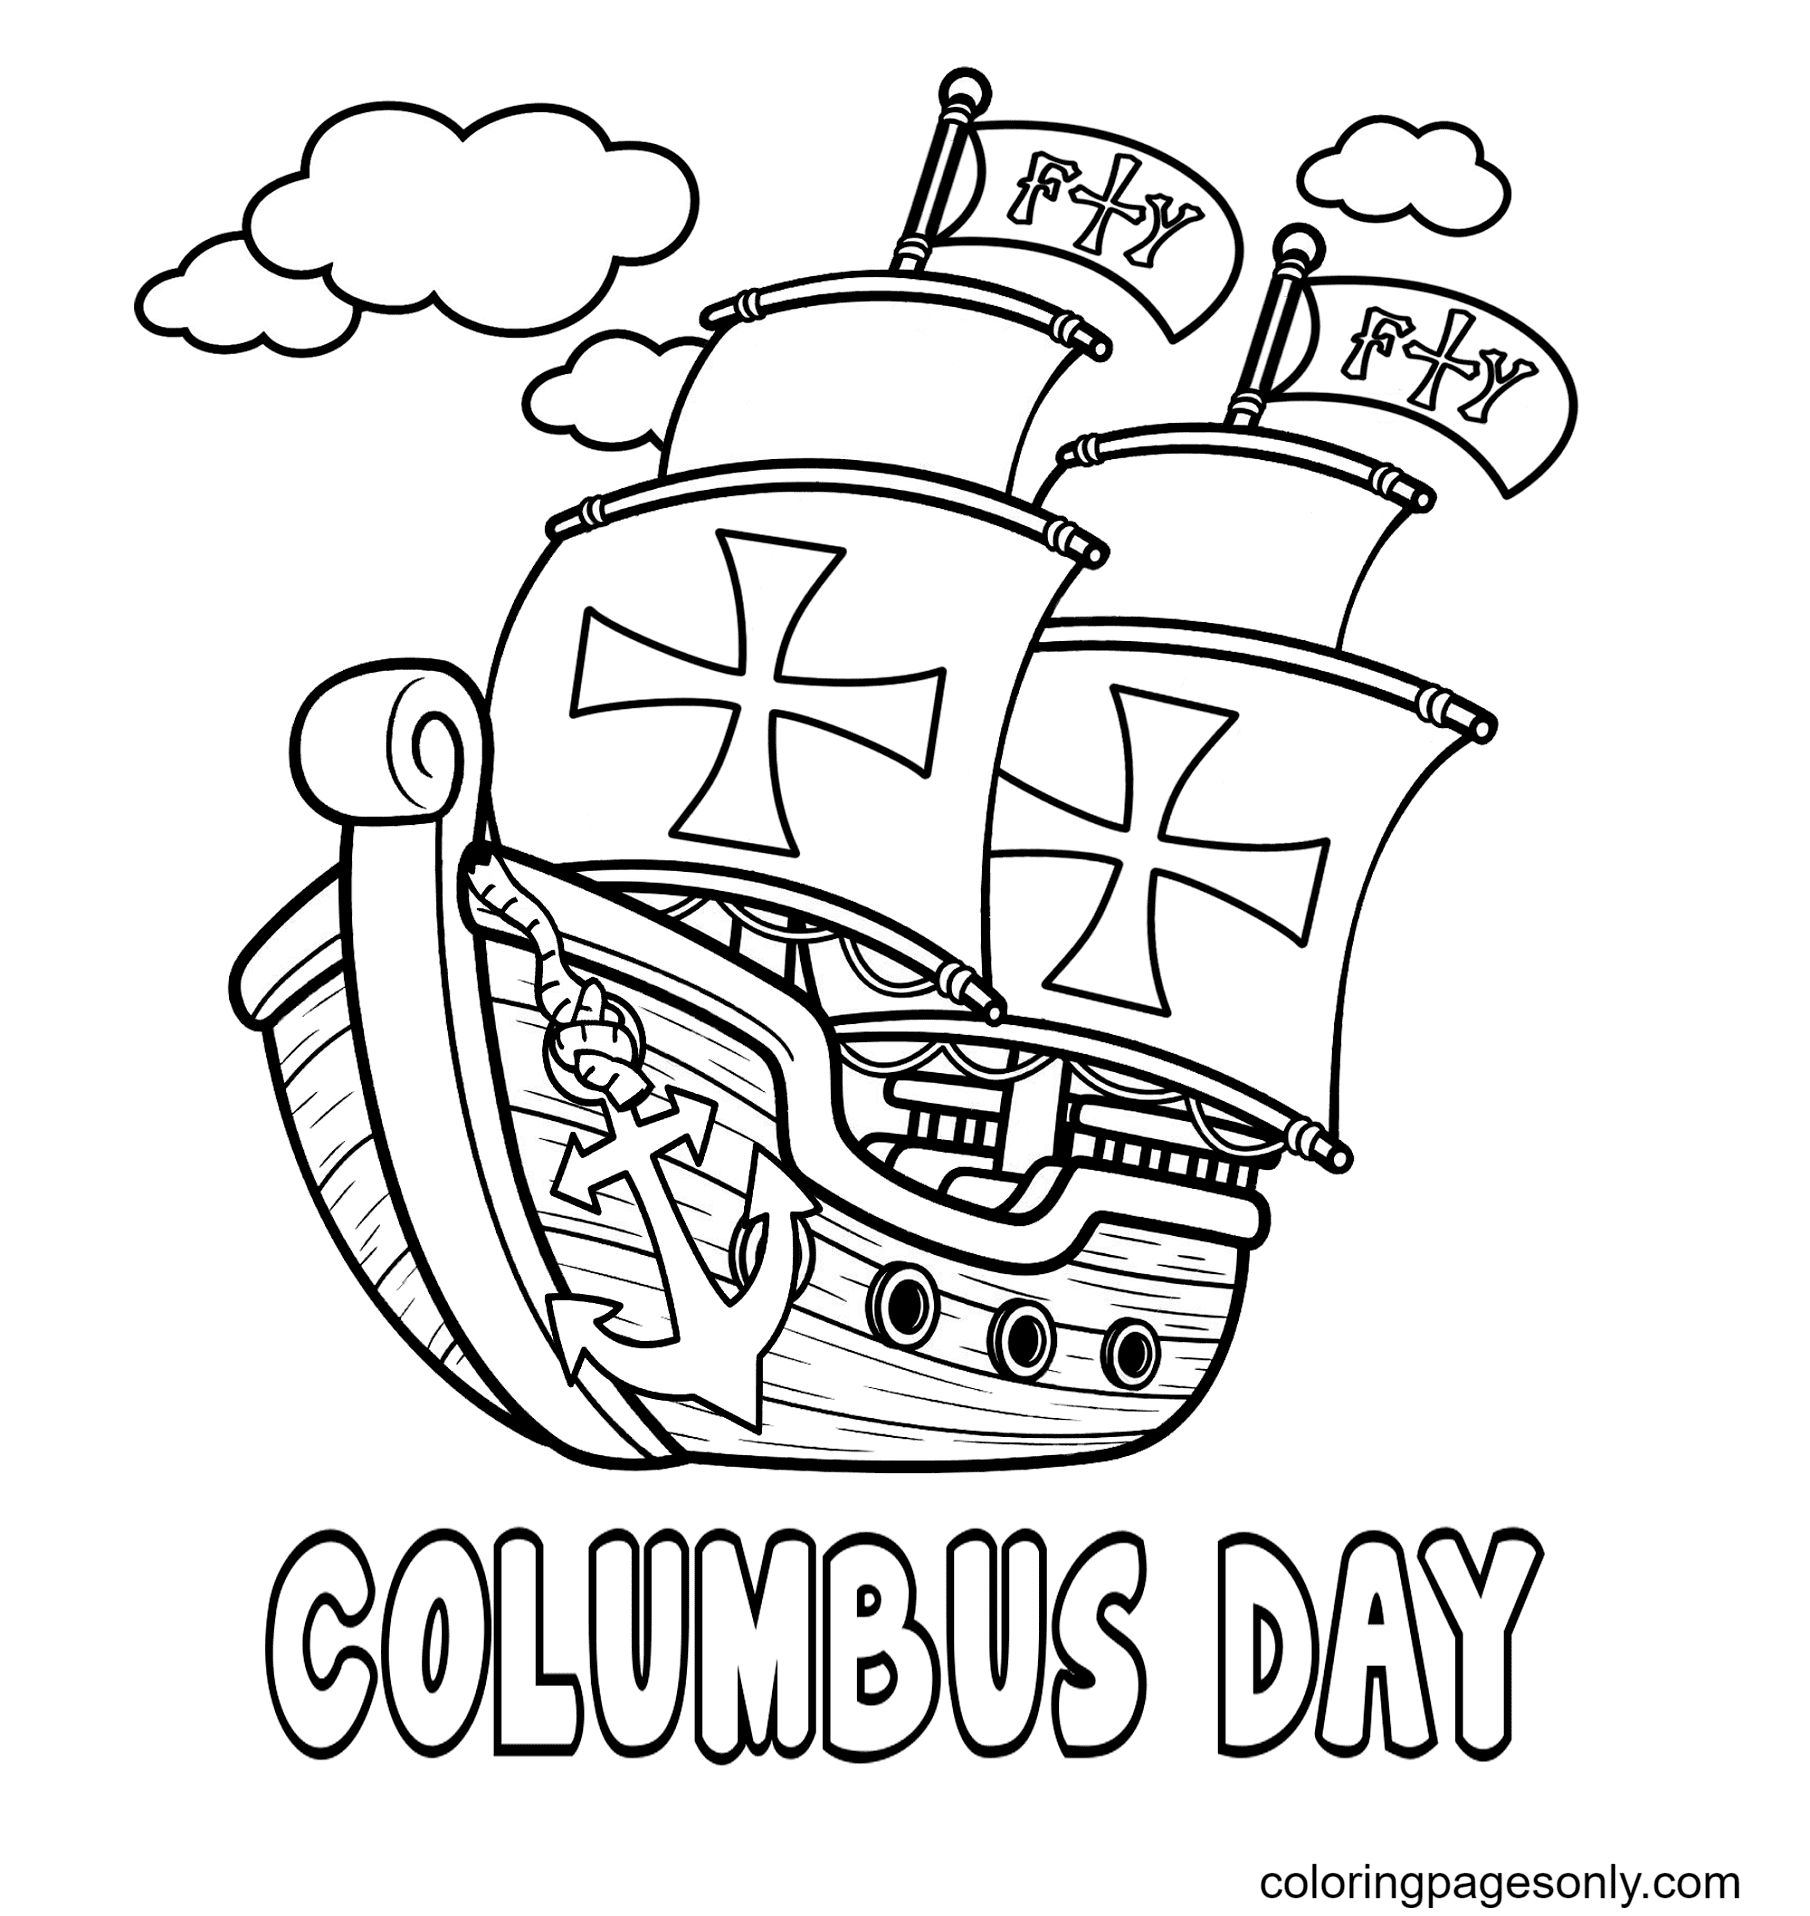 طباعة مجانية كريستوفر كولومبوس من يوم كولومبوس